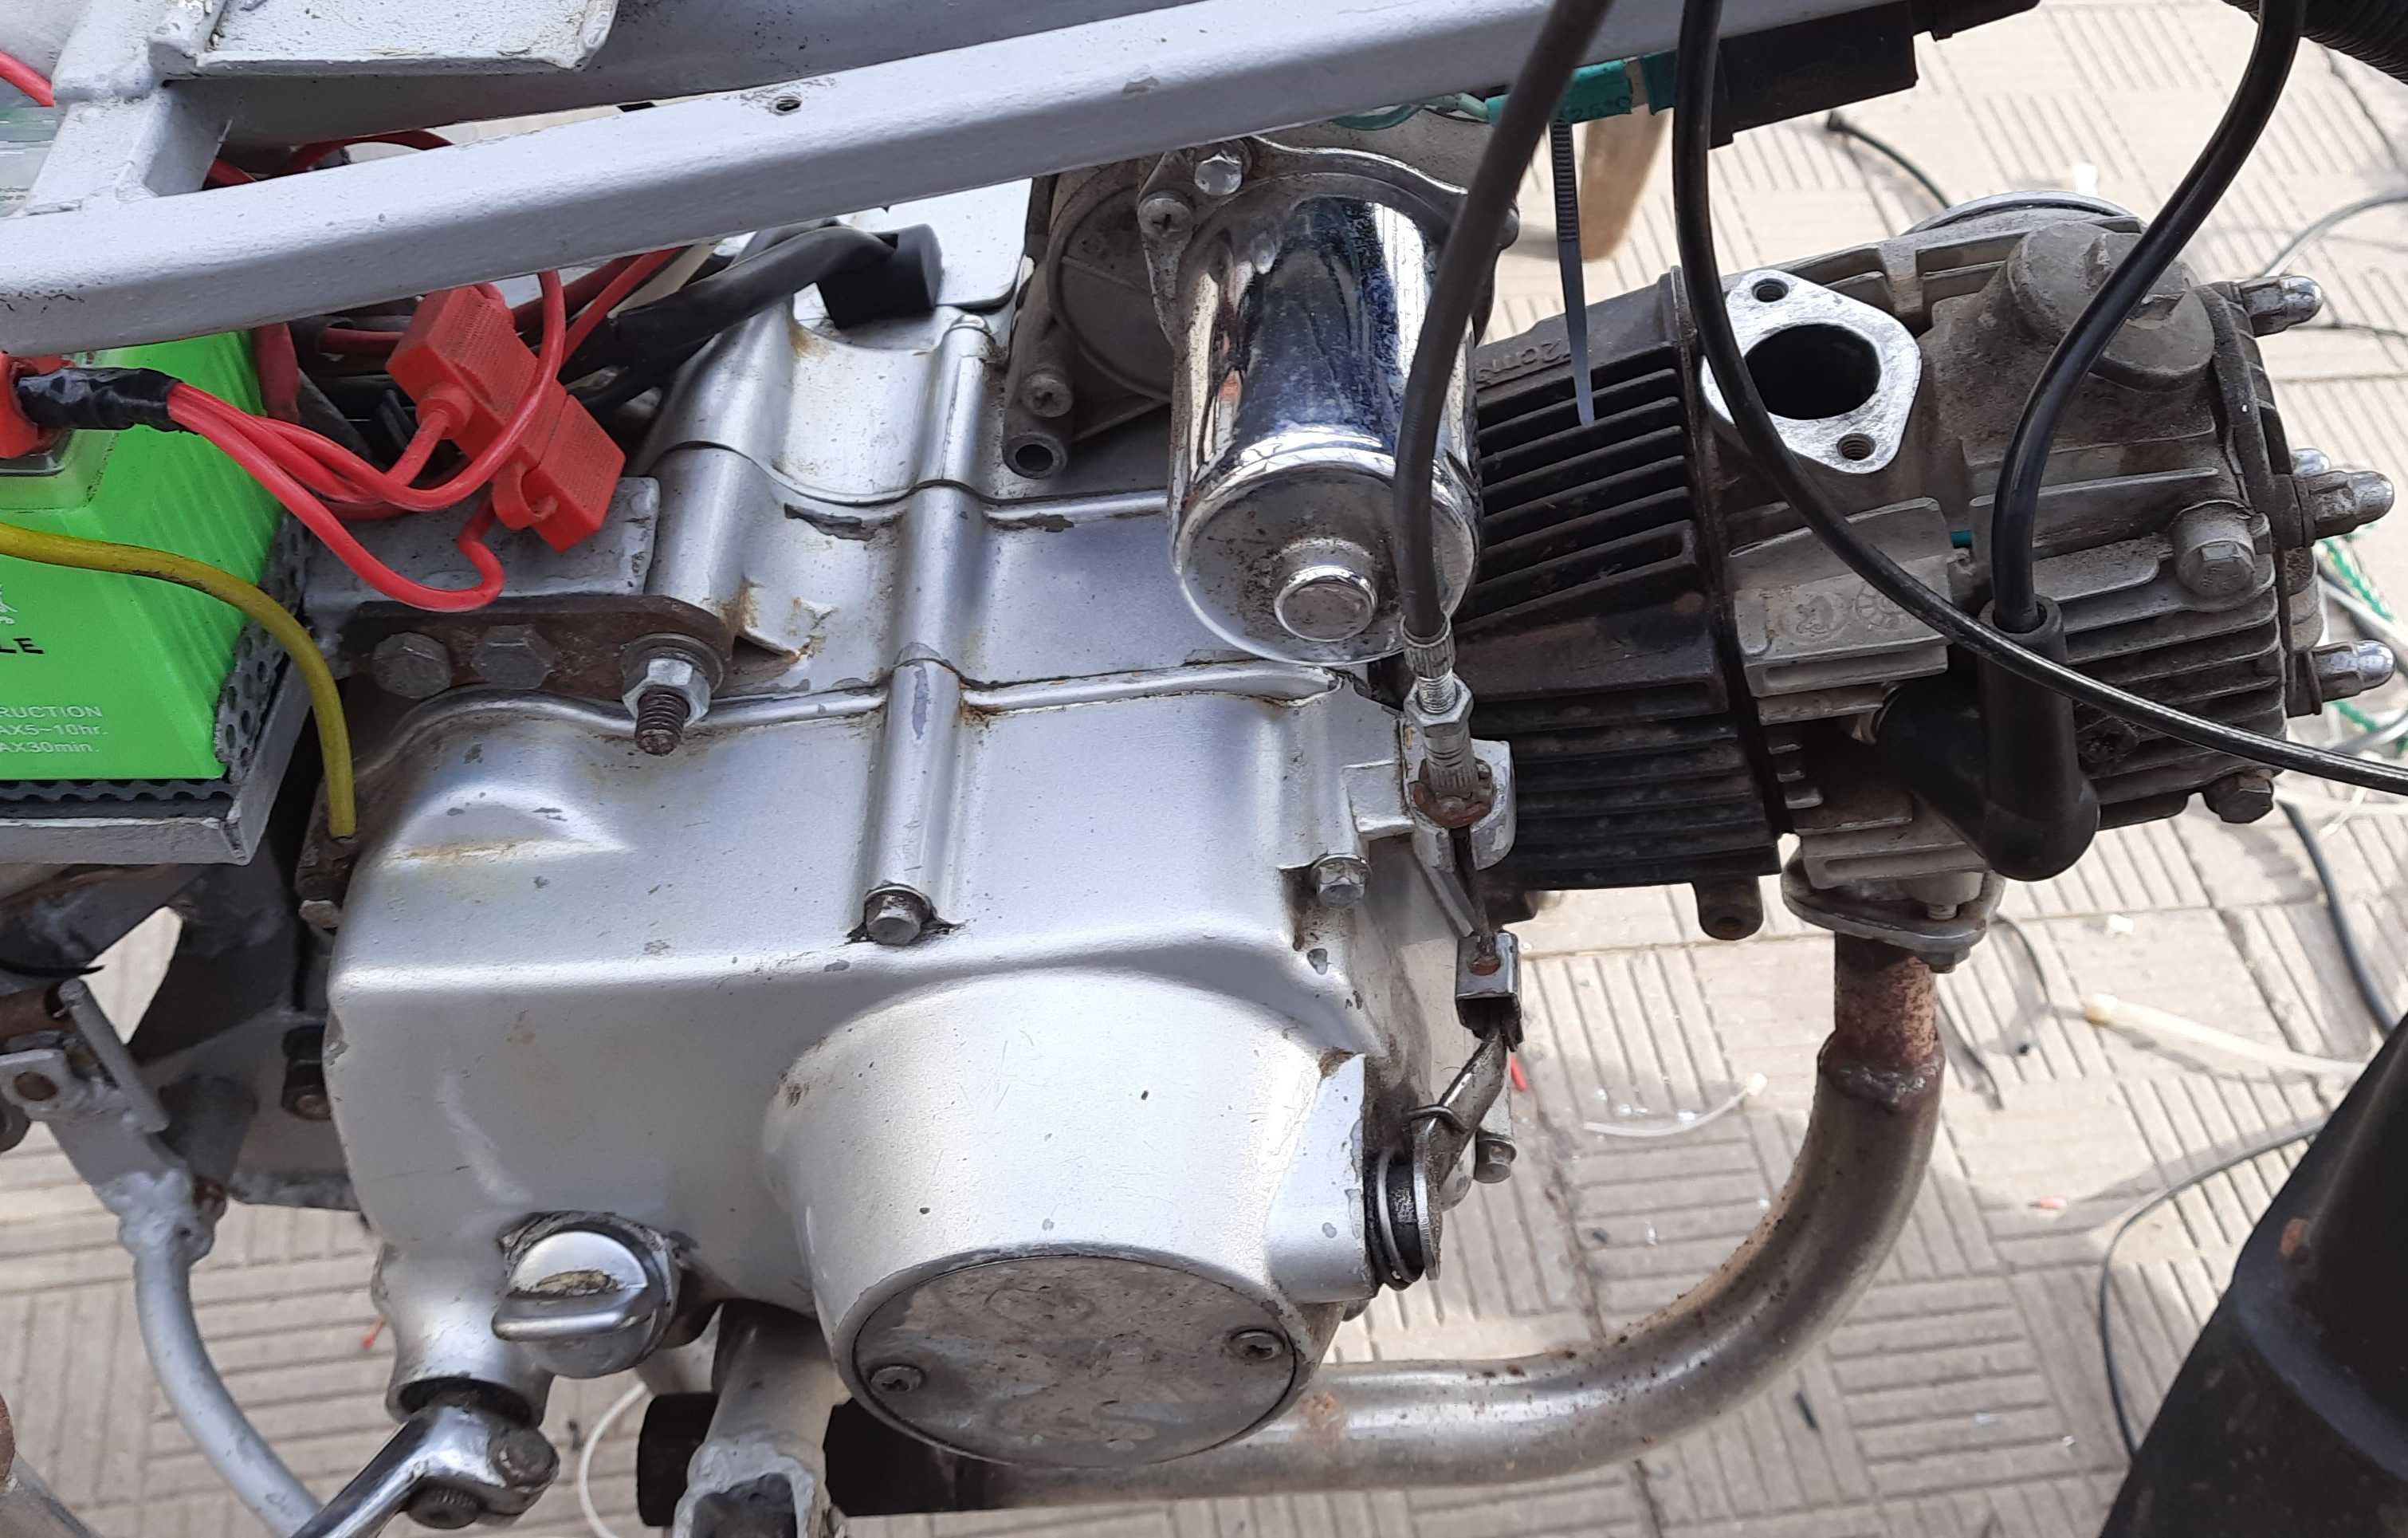 Мотор двигатель мопеда Альфа / Дельта 72сс в  отличном состоянии